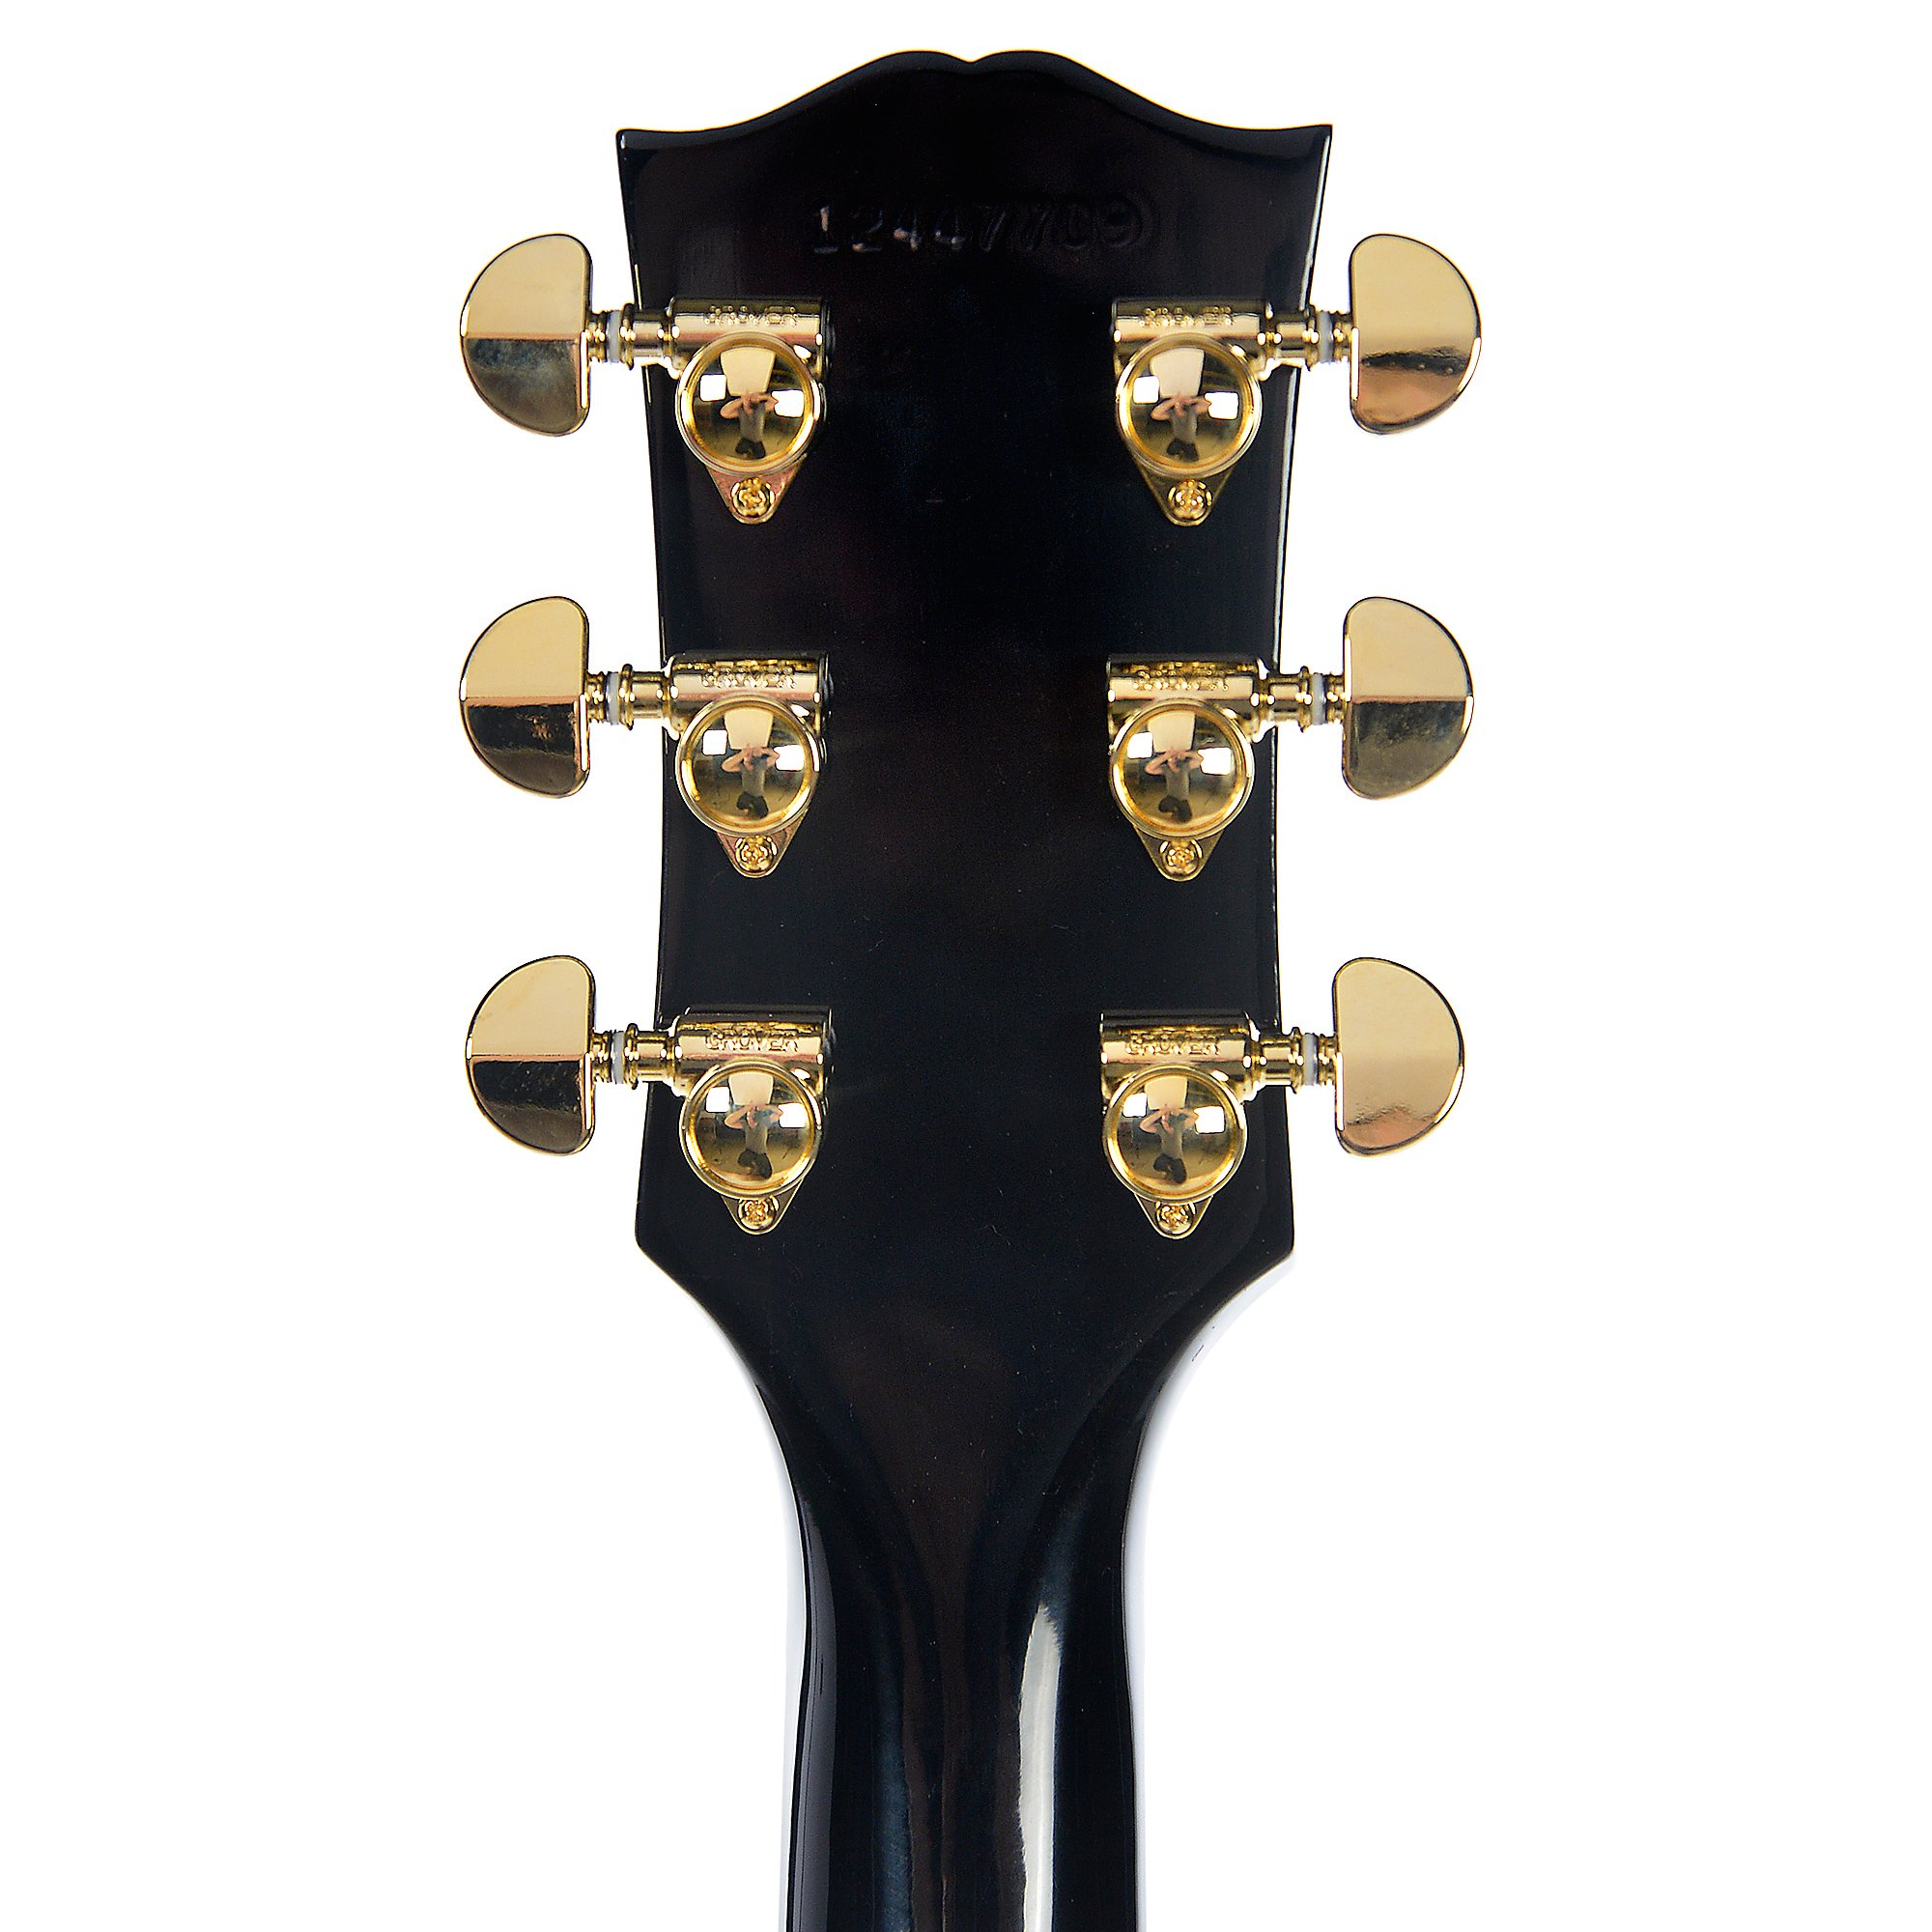 Gibson Es-275 Custom 2018 Ltd - Ebony - Hollow-body electric guitar - Variation 4